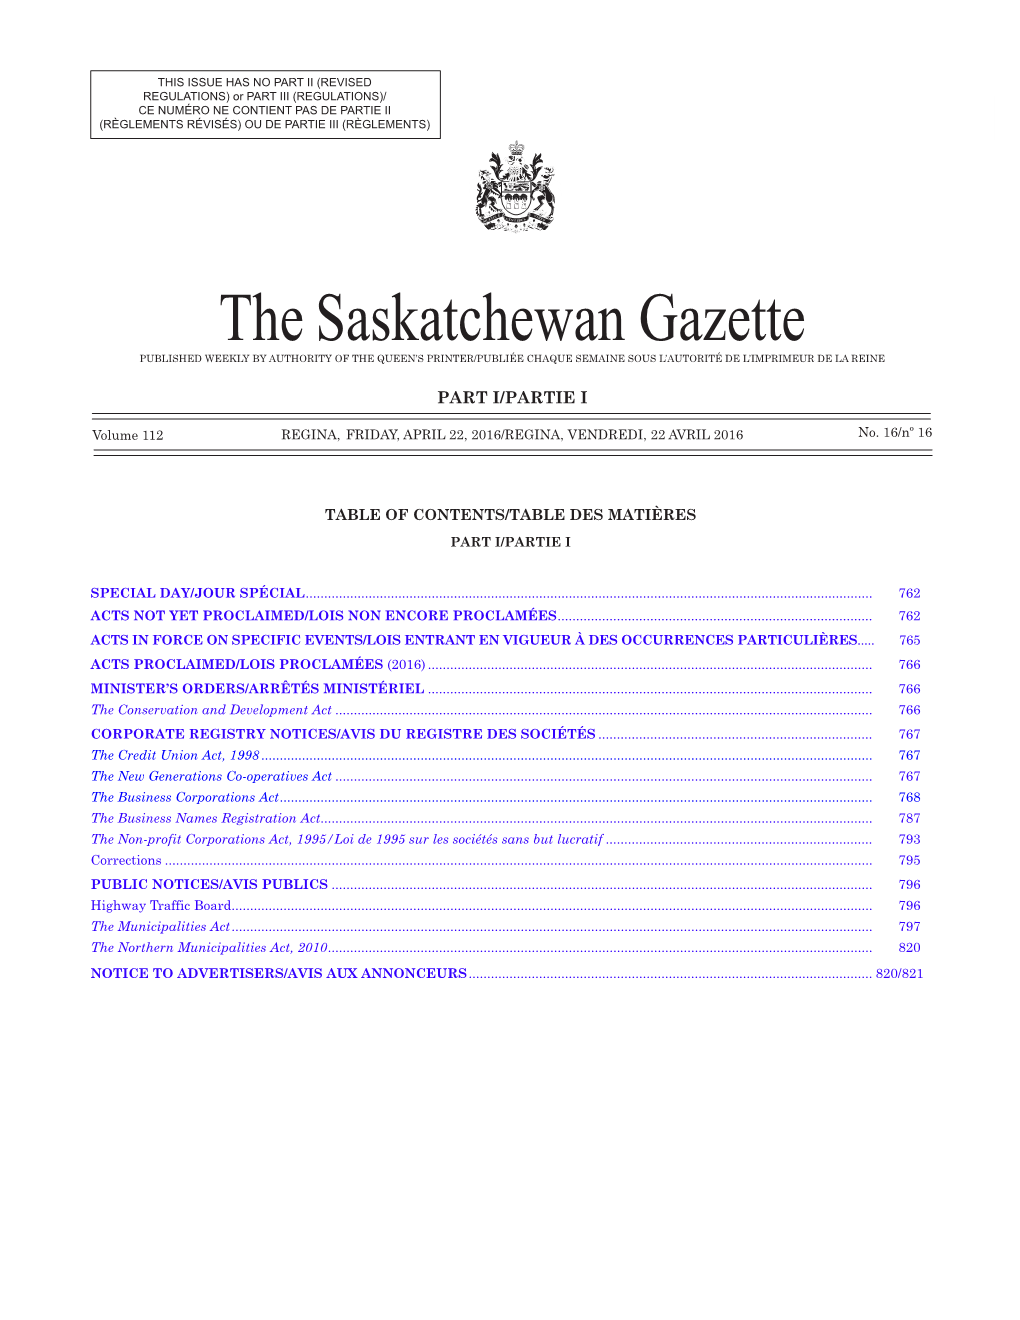 The Saskatchewan Gazette, April 22, 2016